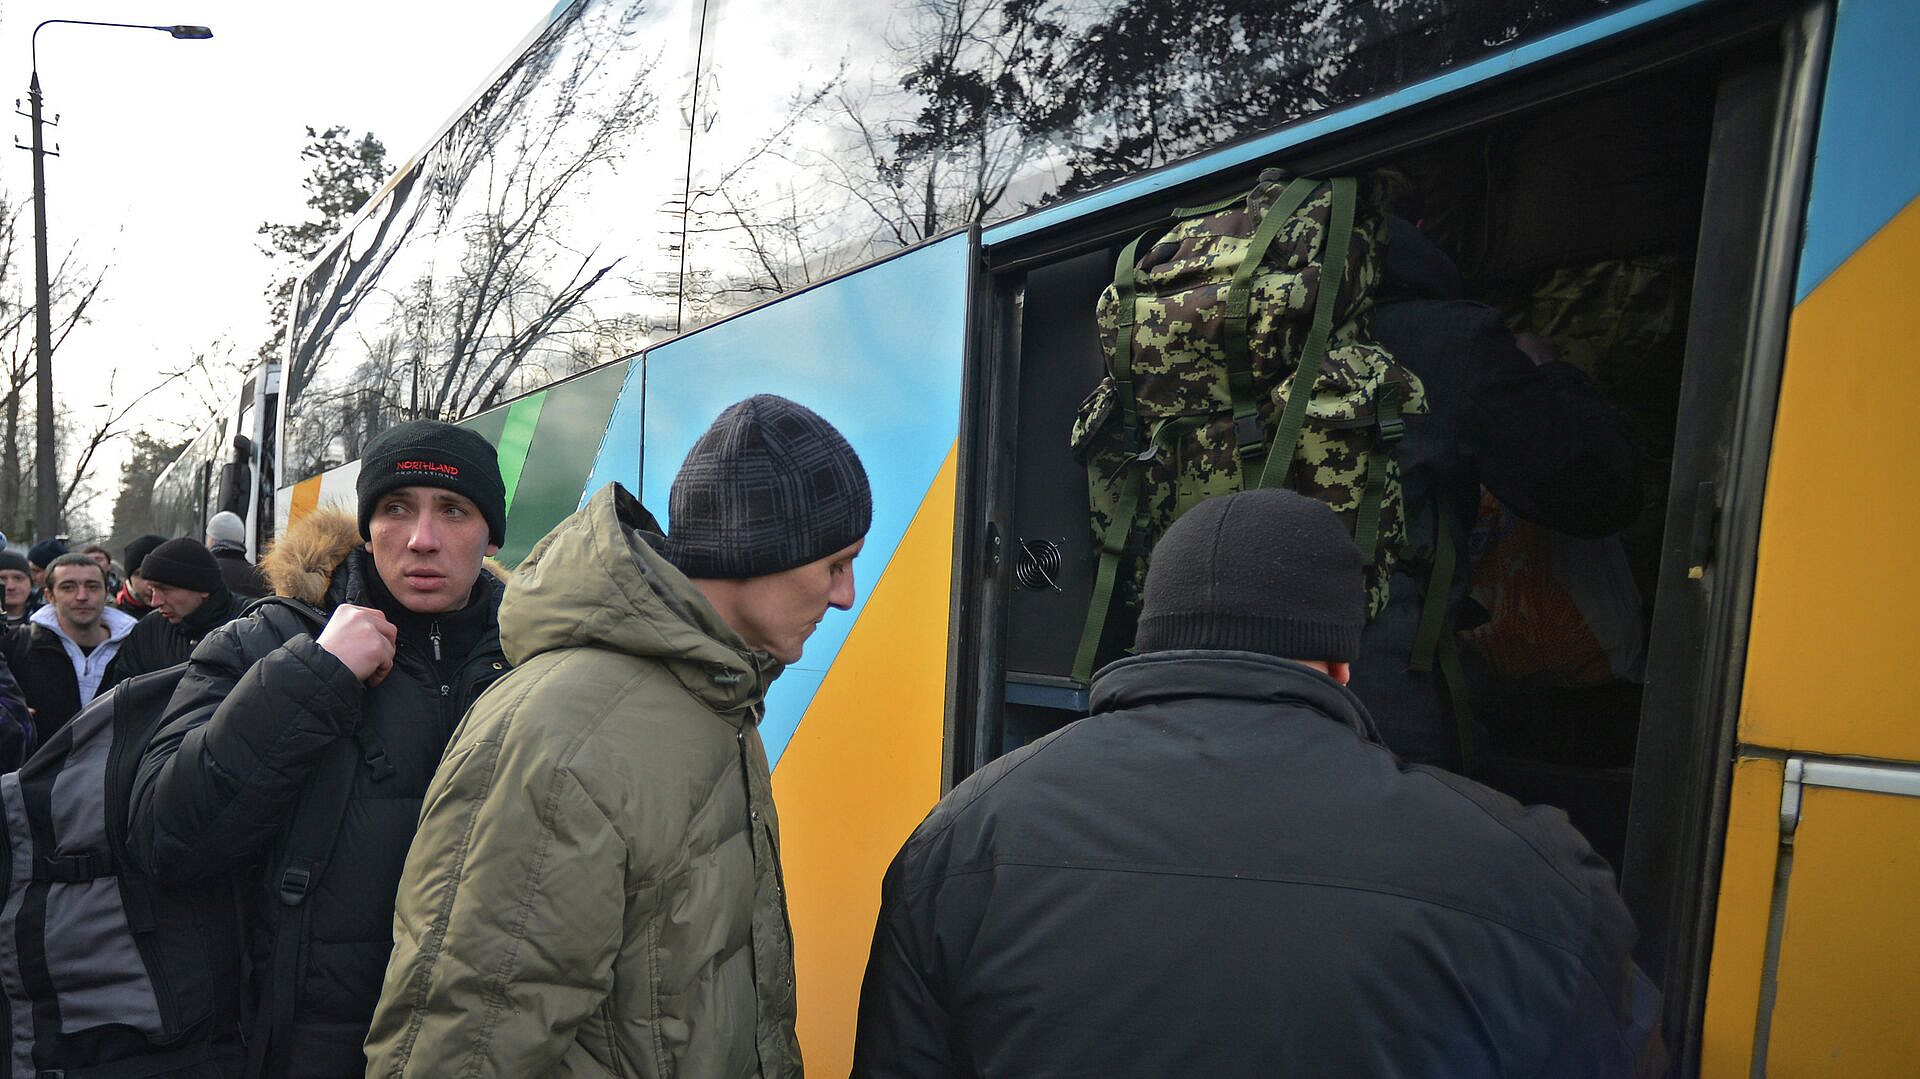 Ужесточение мобилизации на украине